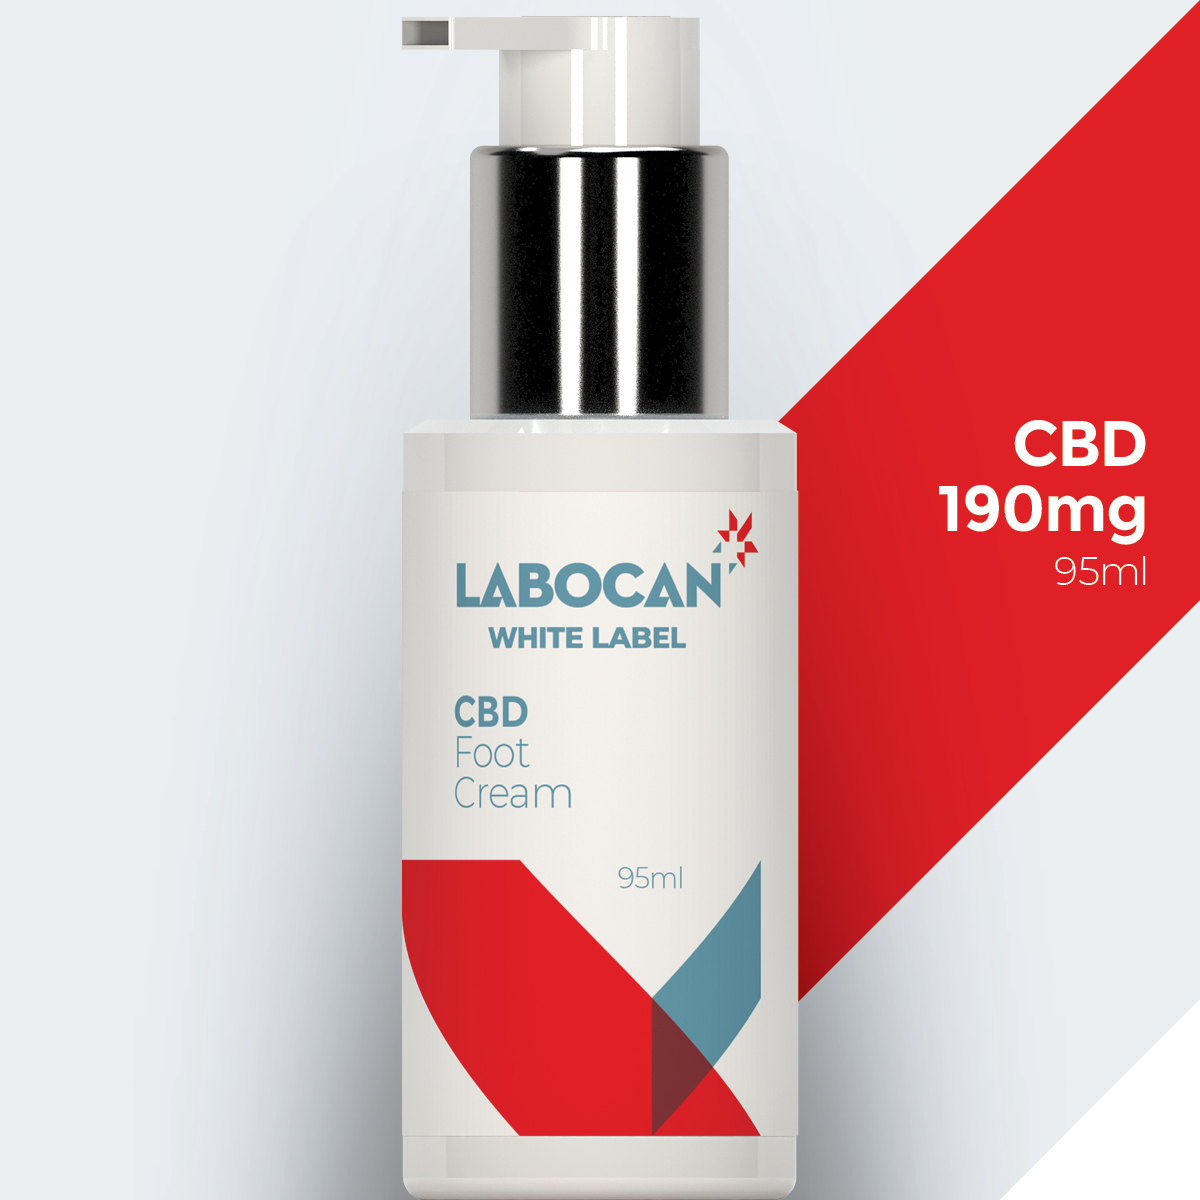 Labocan White Label CBD Foot Cream